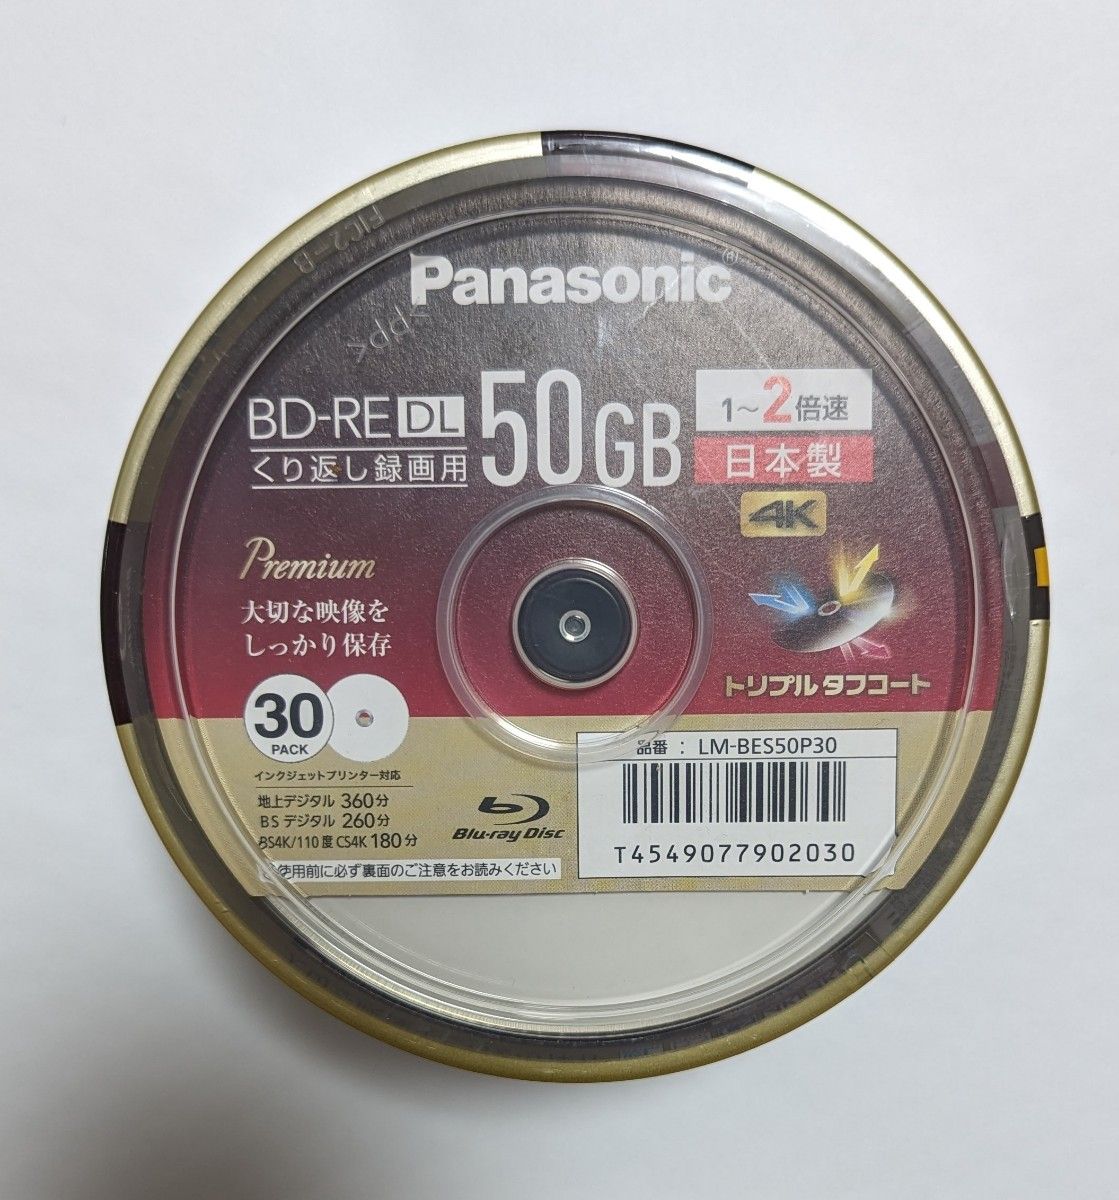 録画用BD-RE DL 2倍速 30枚 LM-BES50P30 ×1 Panasonic ブルーレイ